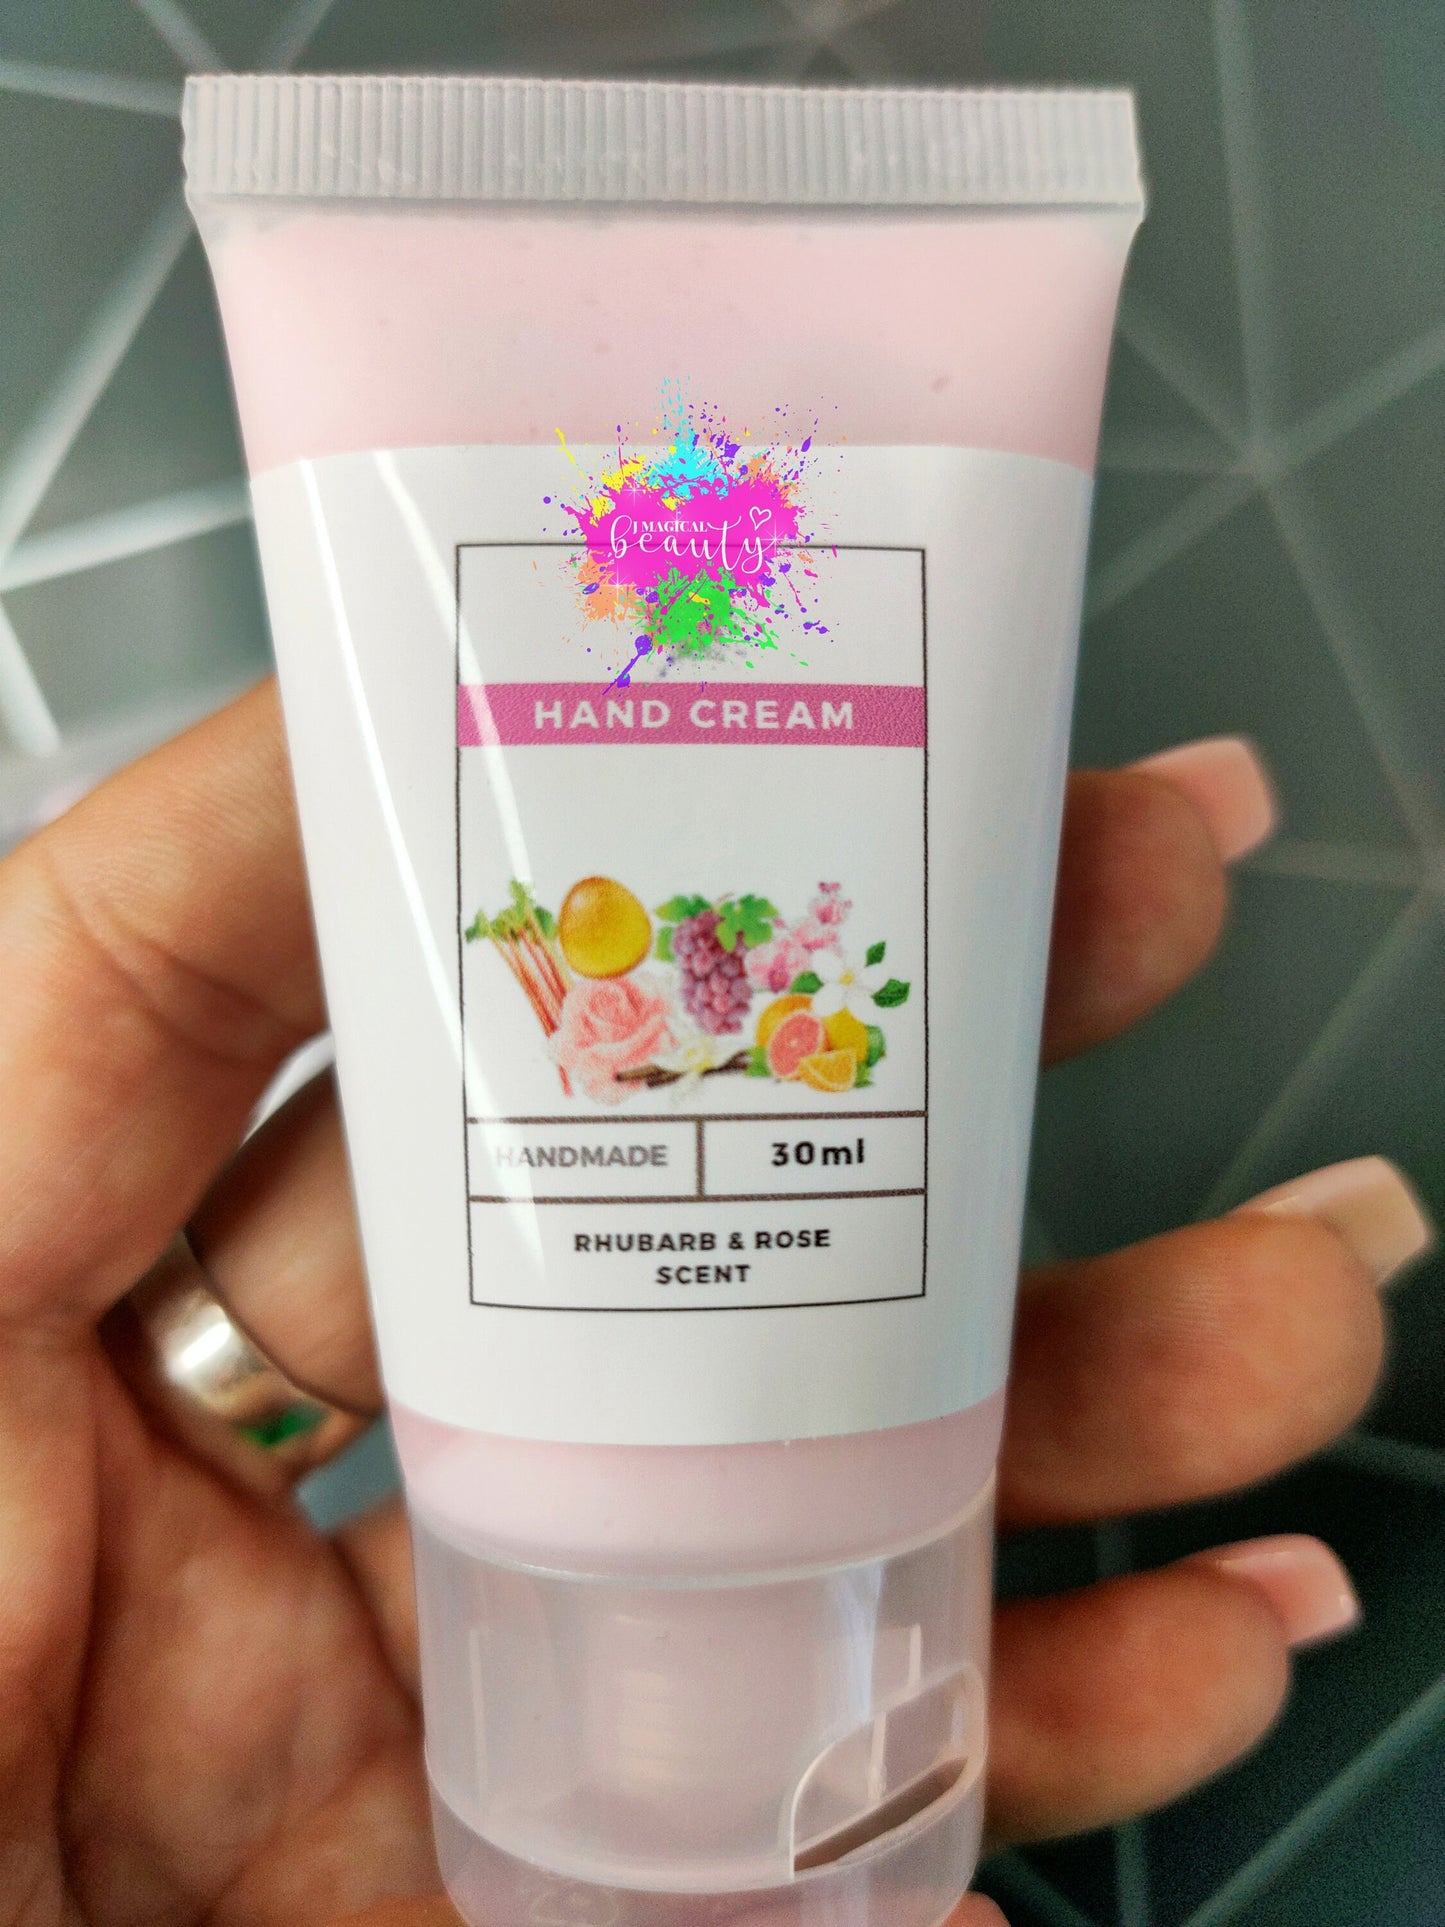 Hand Cream Rhubarb & Rose scent